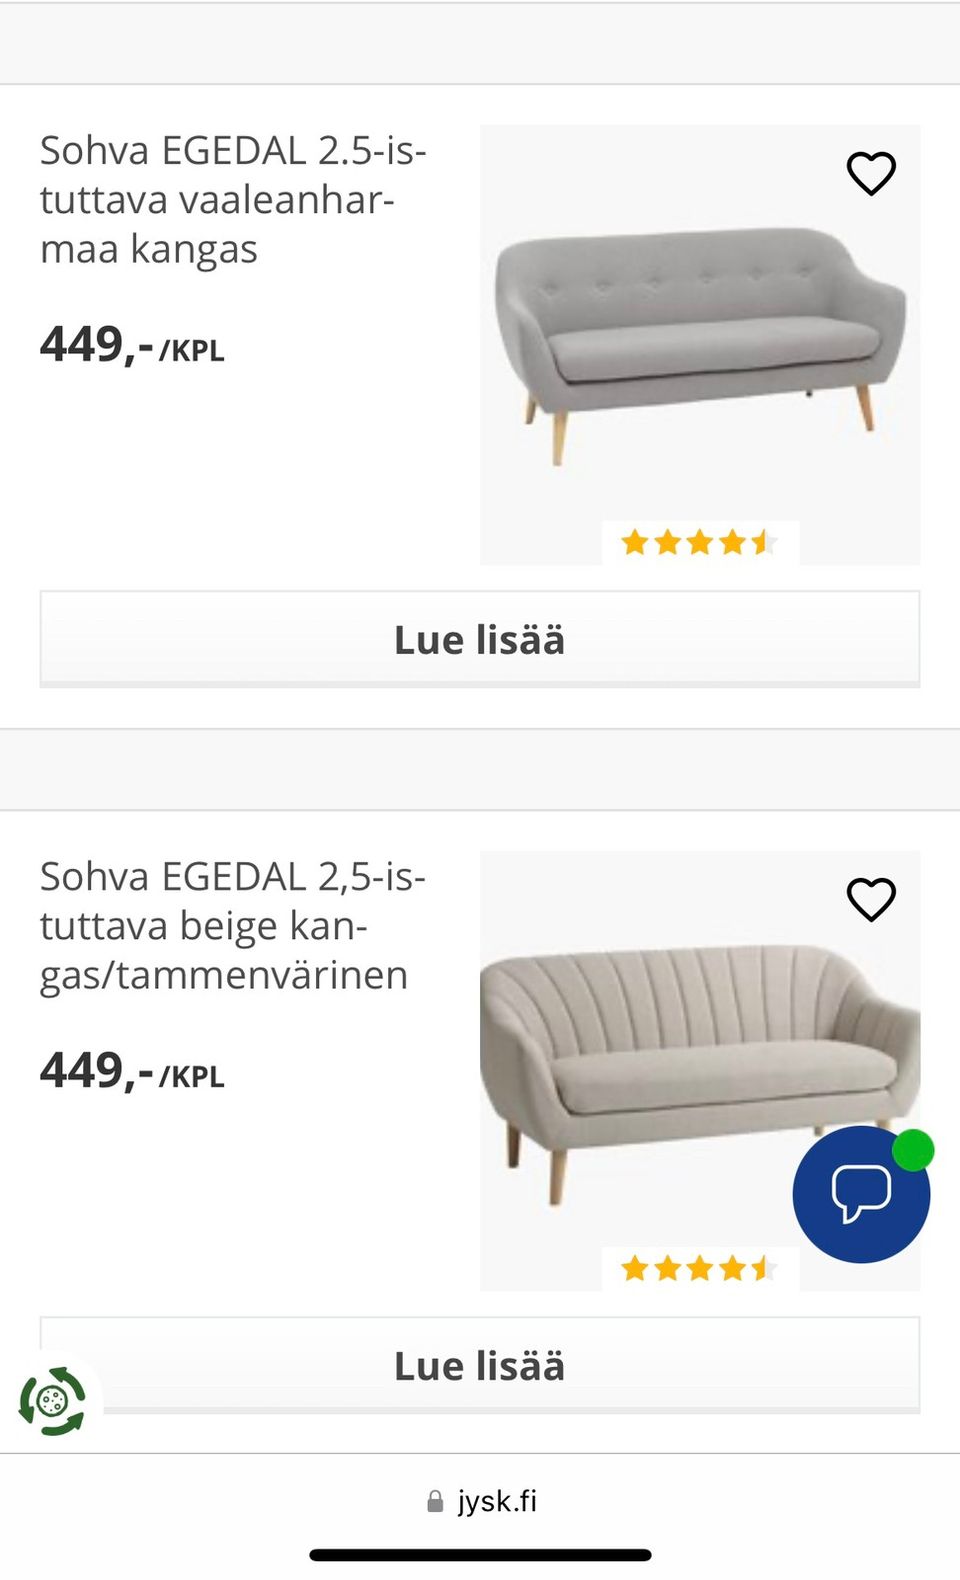 Ostetaan EGEDAL sohva